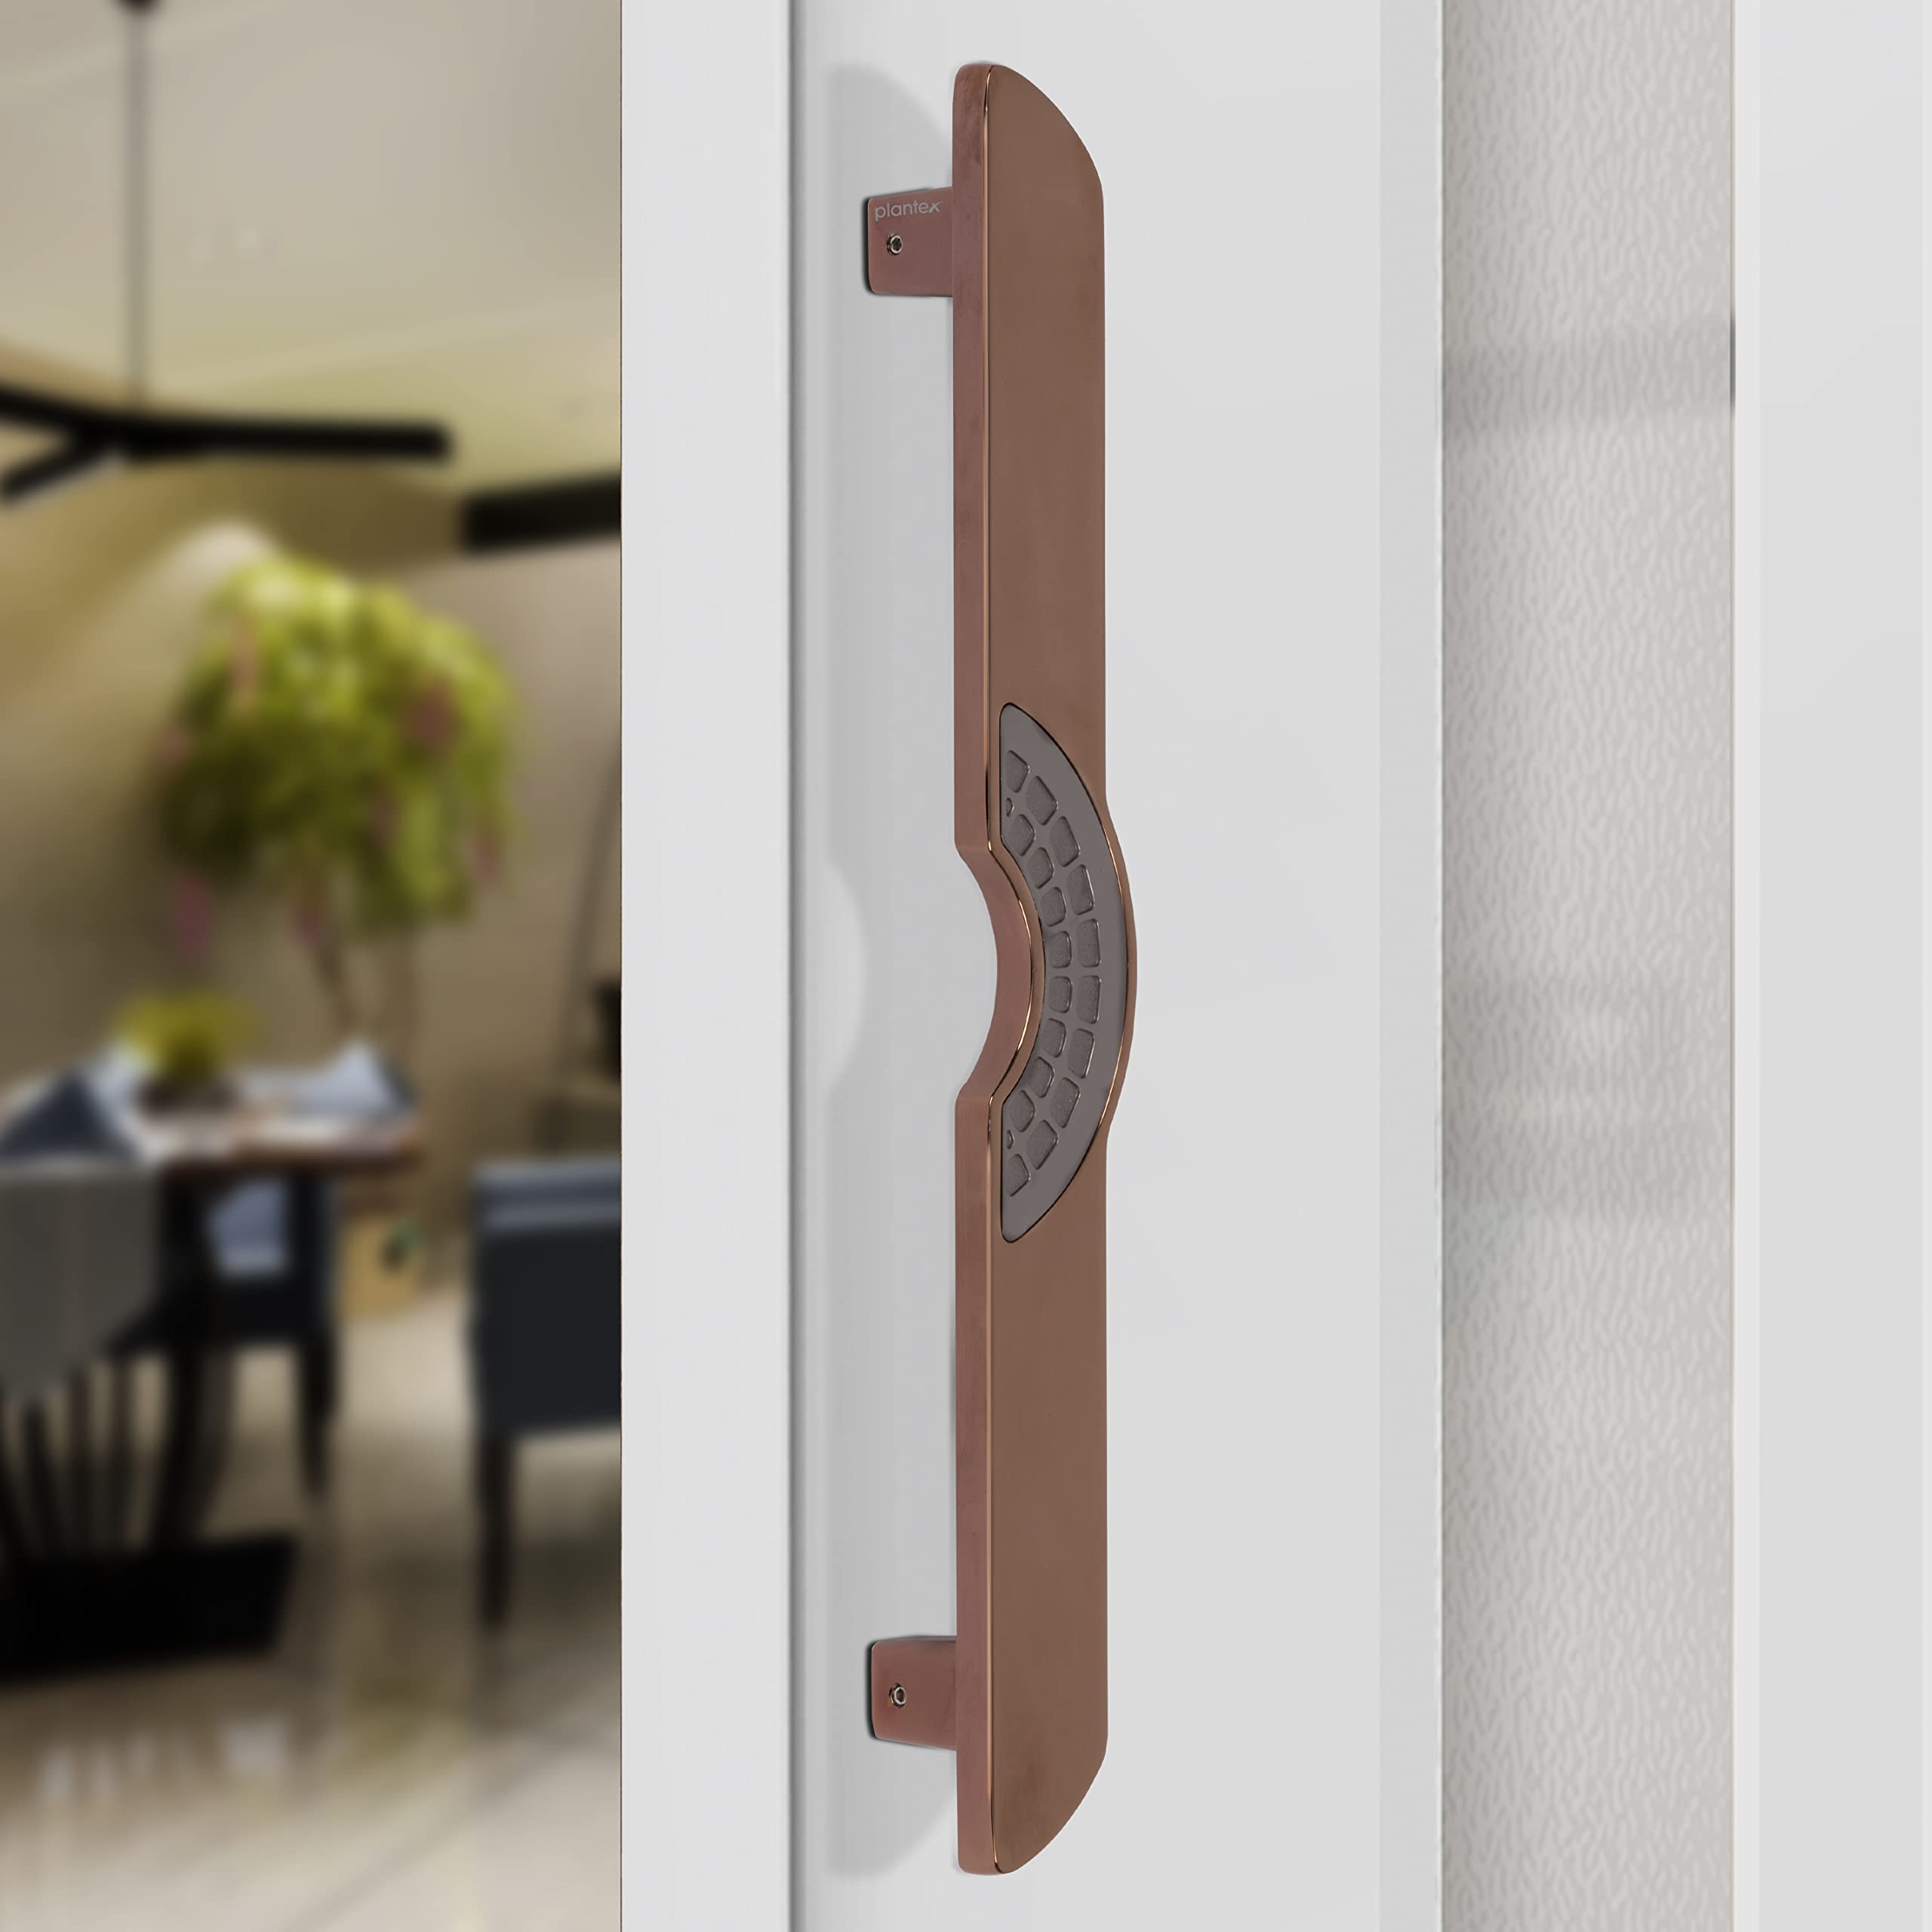 Plantex Ultron Door Handle/Door & Home Decor/15 Inch Main Door Handle/Door Pull Push Handle – Pack of 1 (316,Rose Gold and Grey Finish)